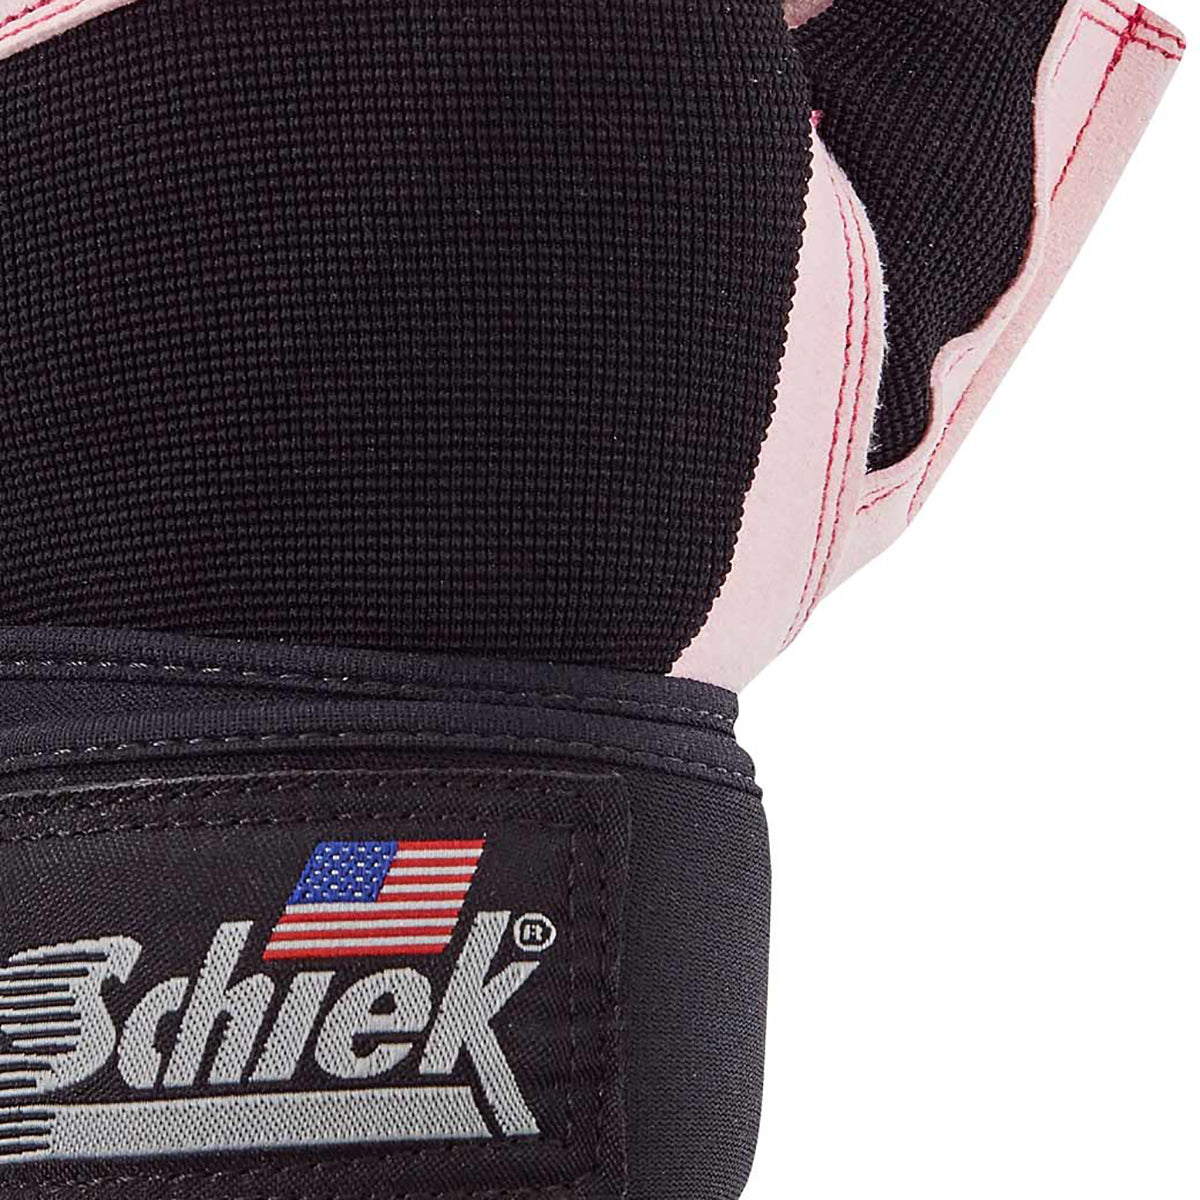 Schiek Sports Women's Model 520 Platinum Series Weight Lifting Gloves - Pink Schiek Sports